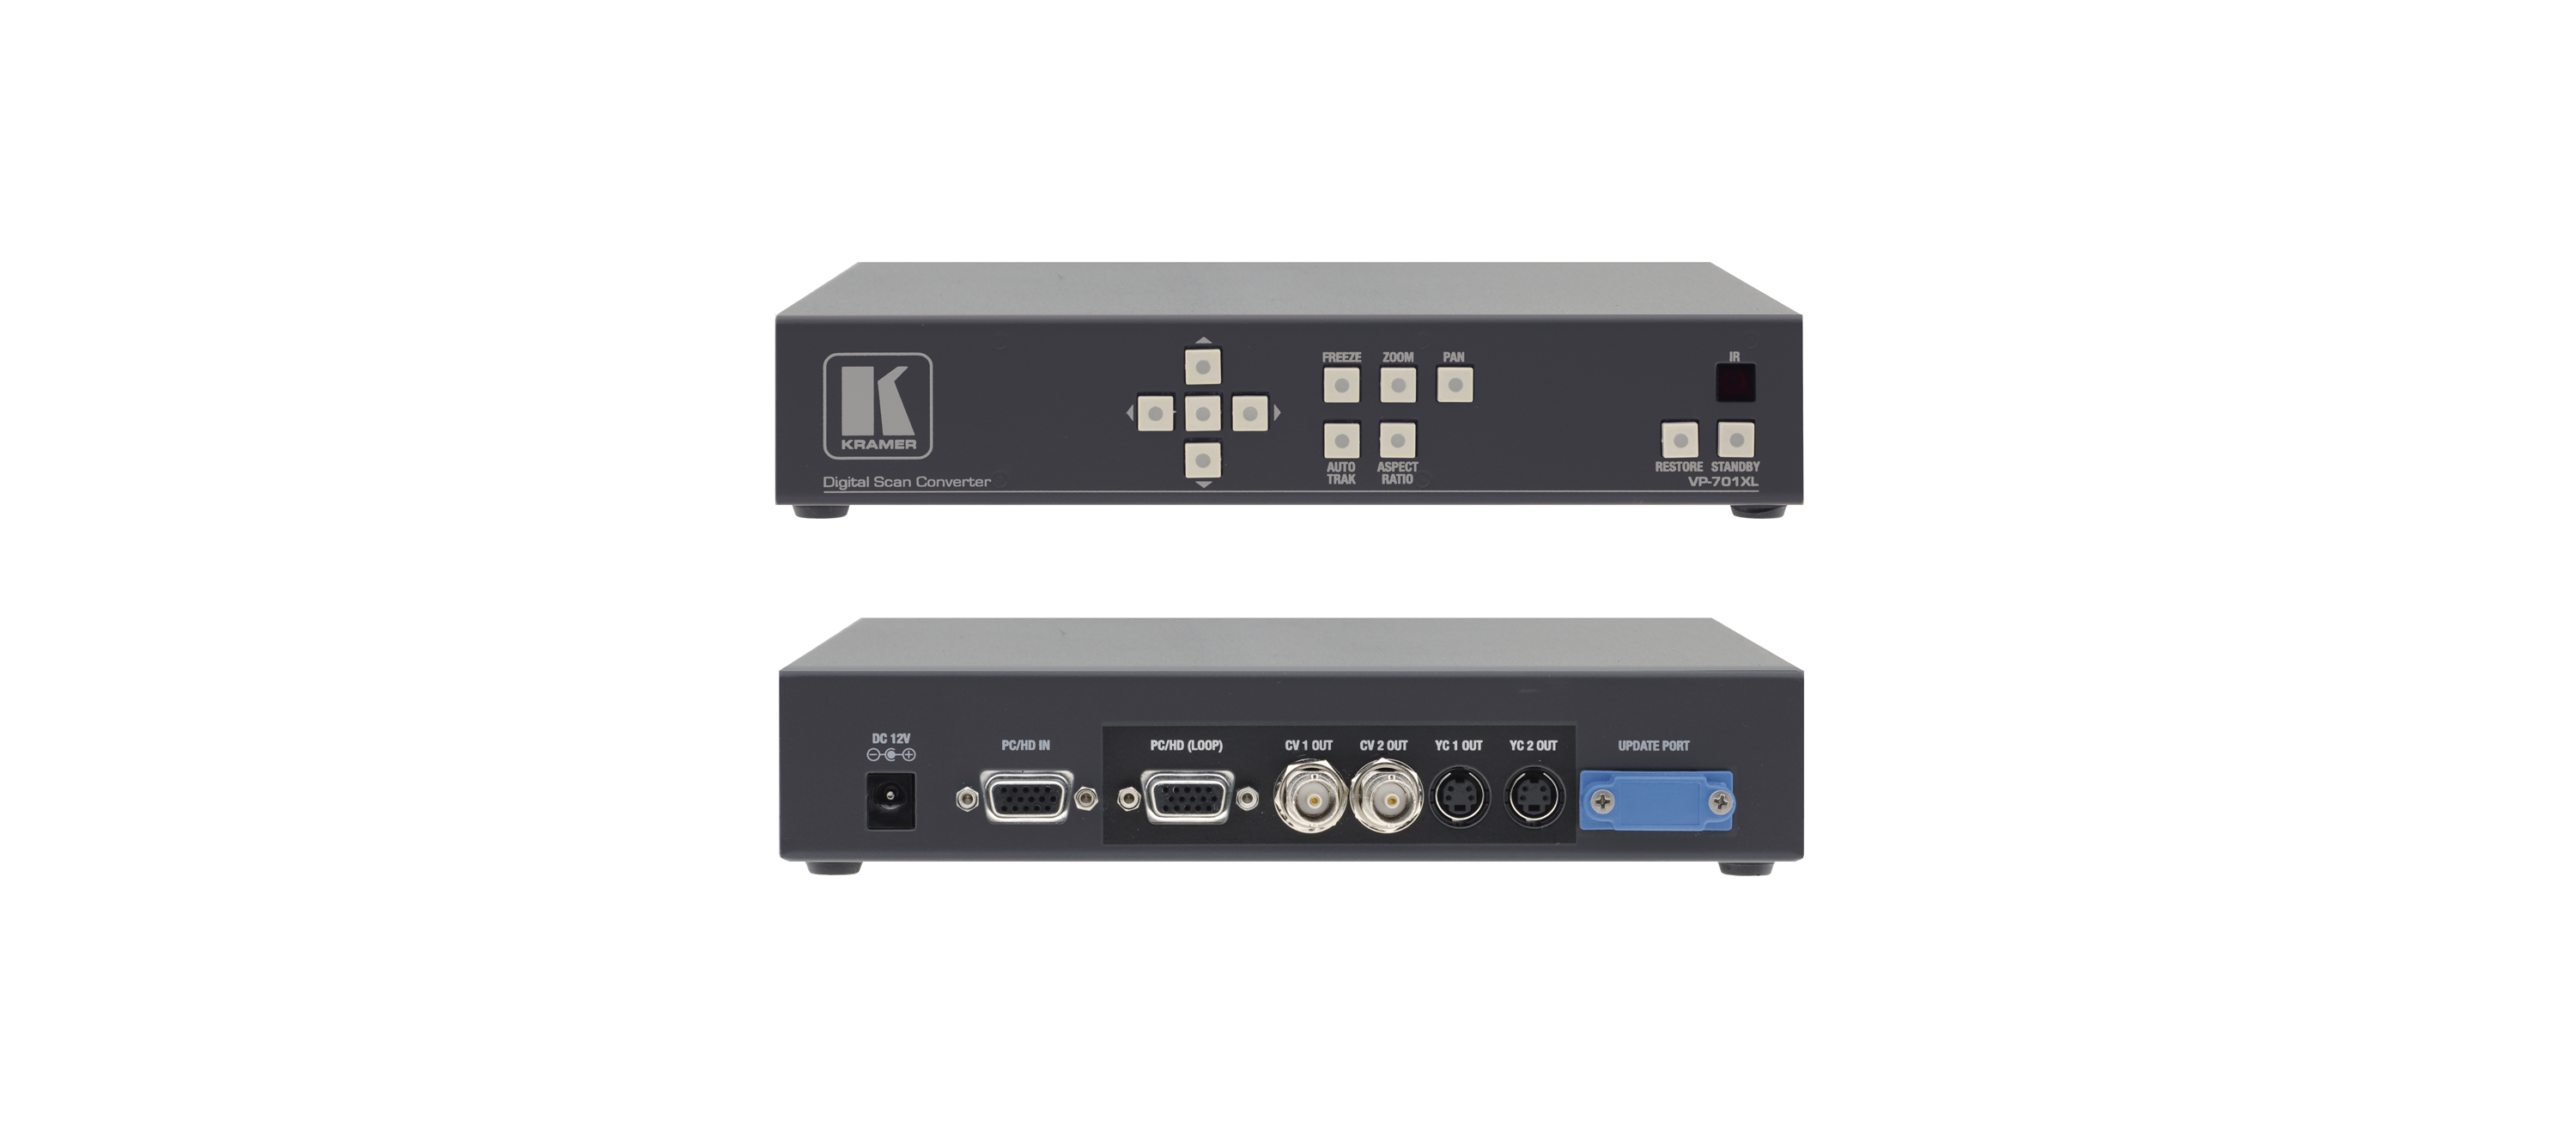 Преобразователь Kramer частоты развертки Kramer компьютерного графического сигнала в видеоформаты с разрешением до 2048x2048 или HDTV одновременно в композитный видеосигнал и s-Video (Y/C) в PAL или NTSC